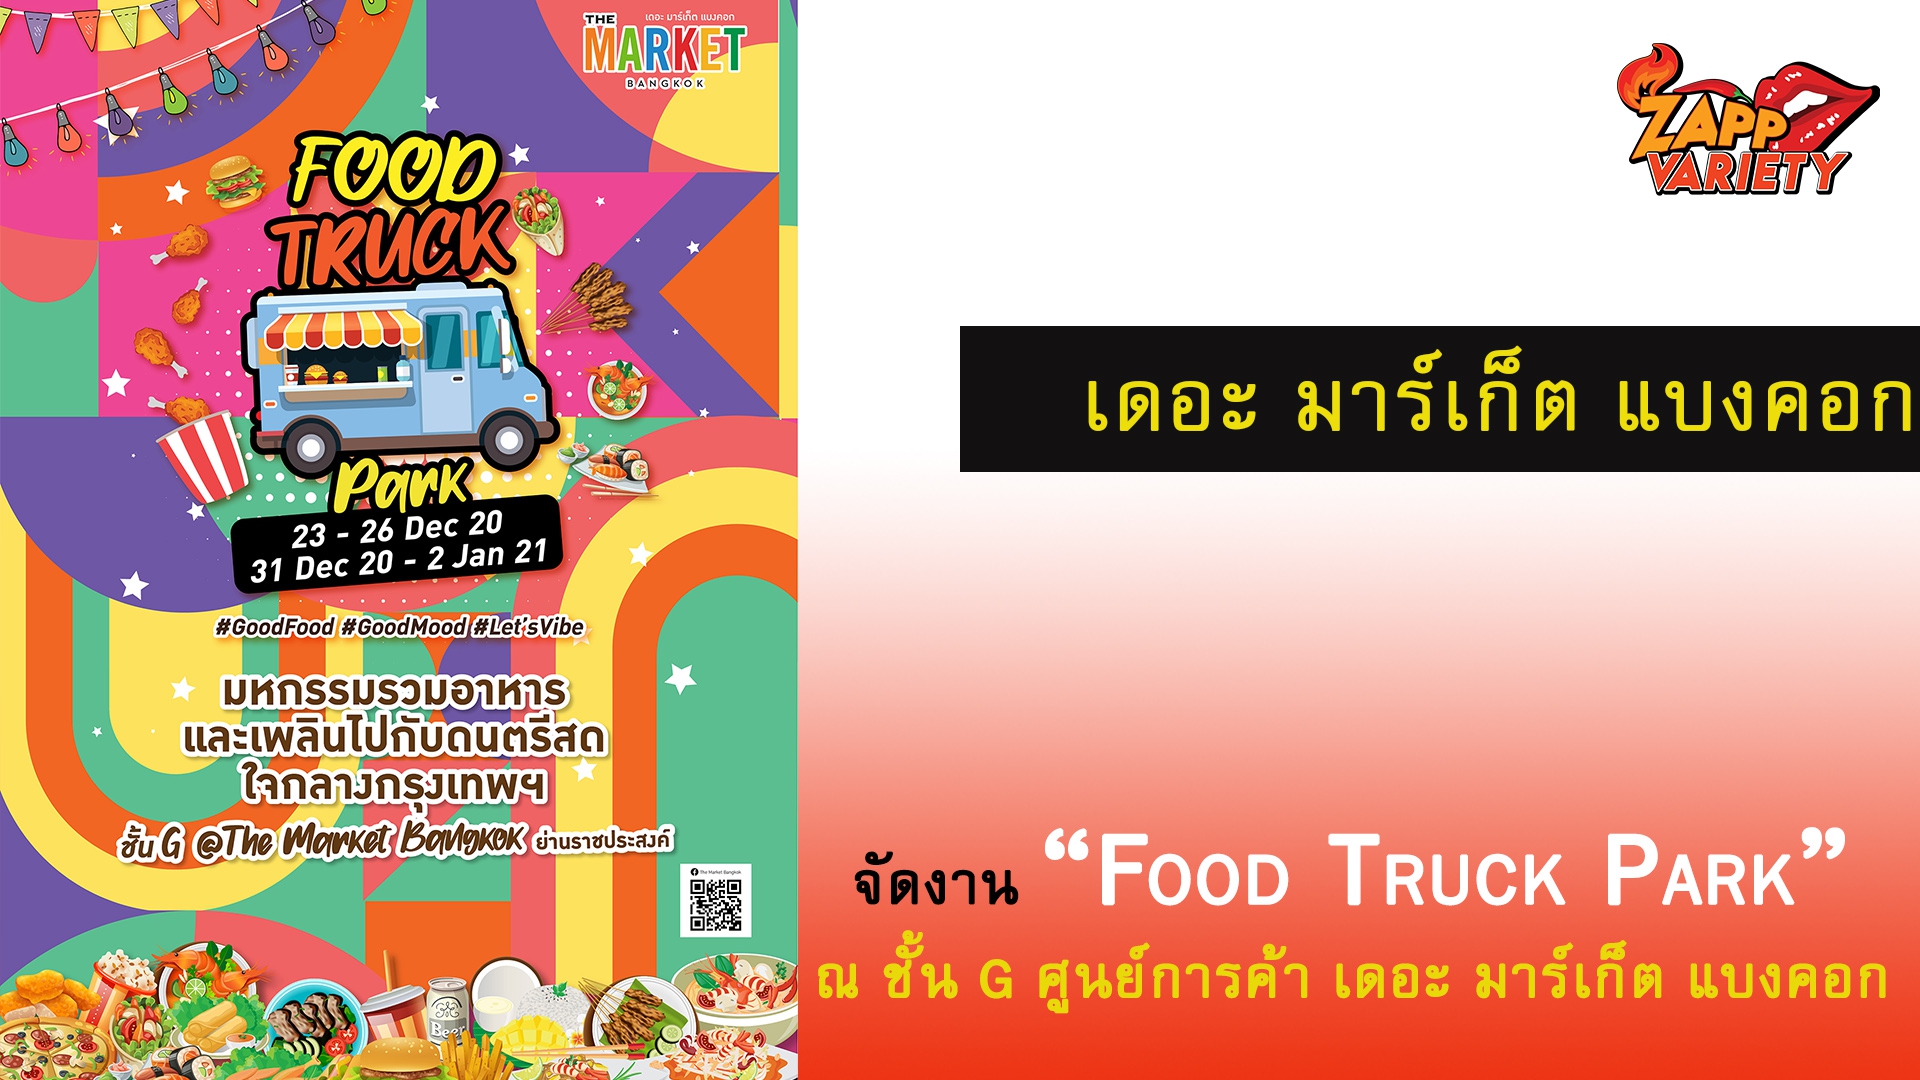 ศูนย์การค้า เดอะ มาร์เก็ต แบงคอก (ราชประสงค์) จัดงาน “Food Truck Park” 